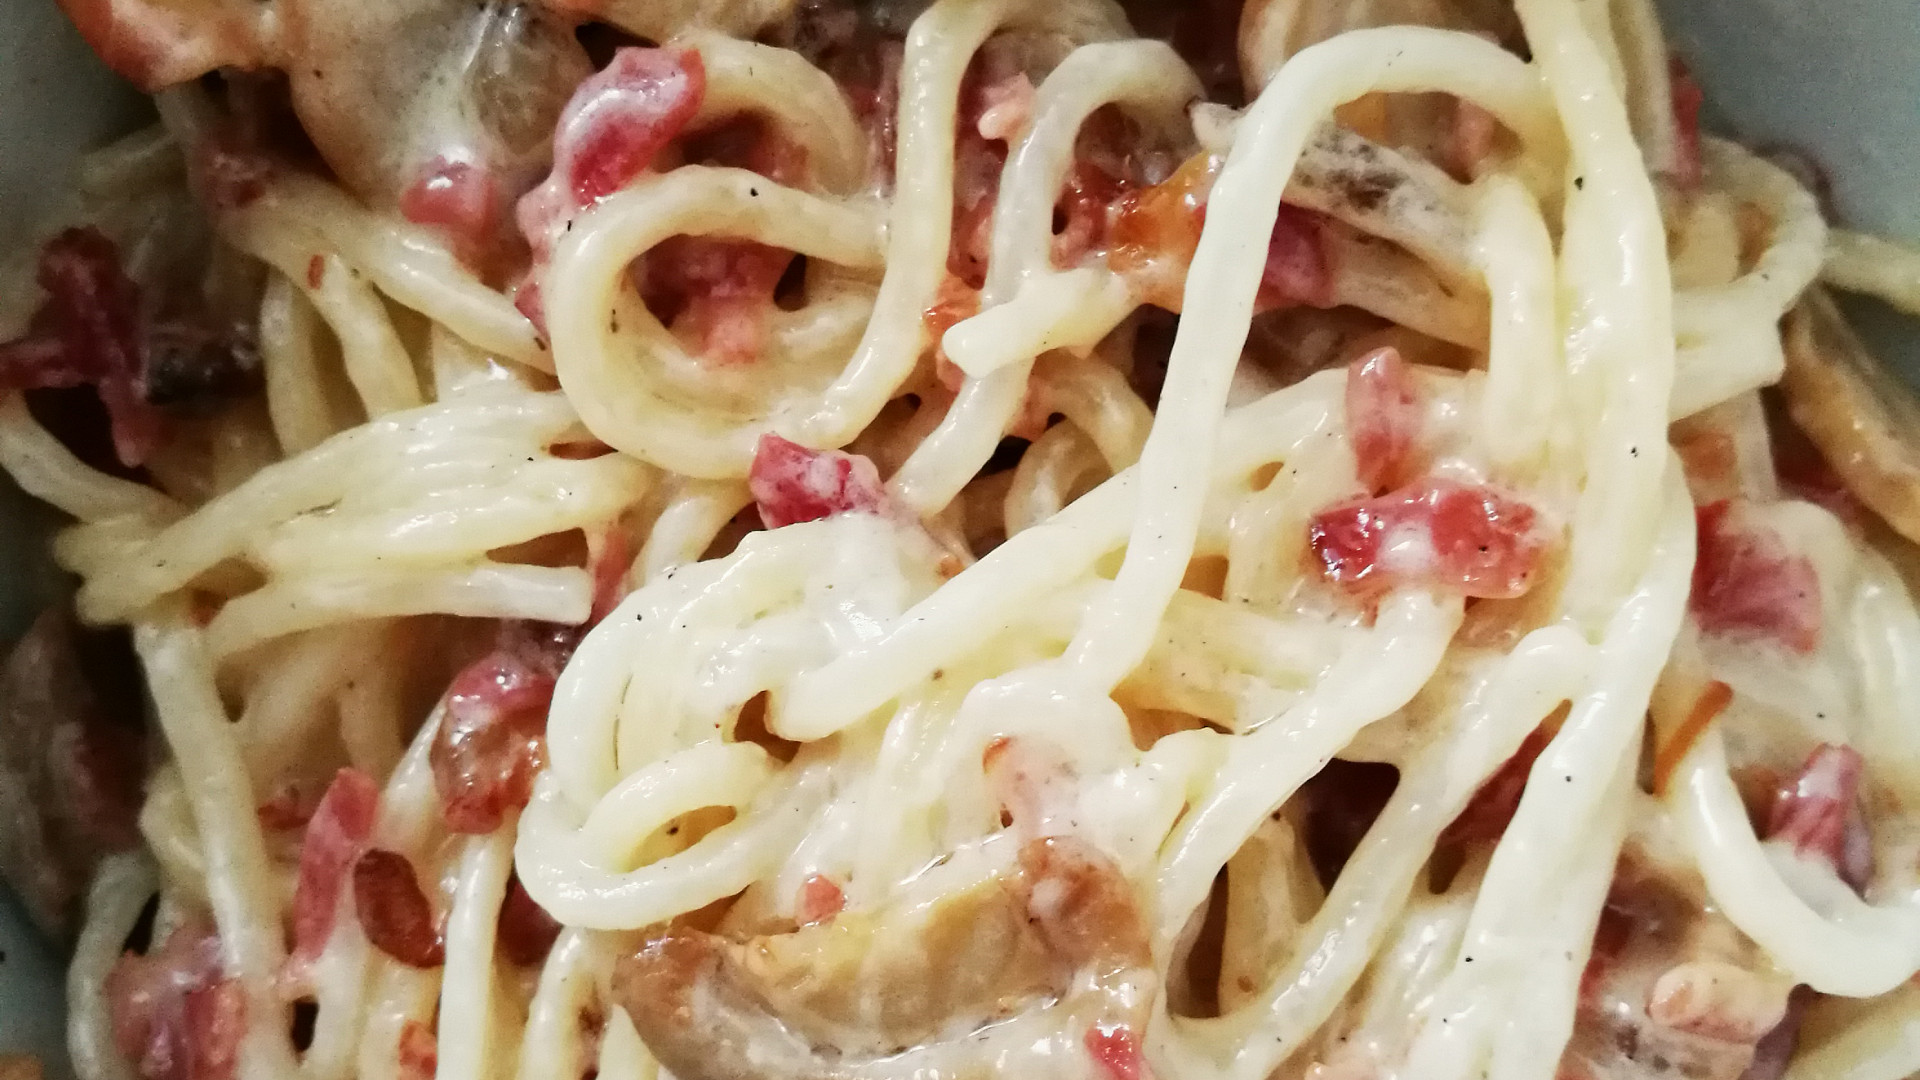 Špagety se smetanou, houbami, slaninou a pancettou